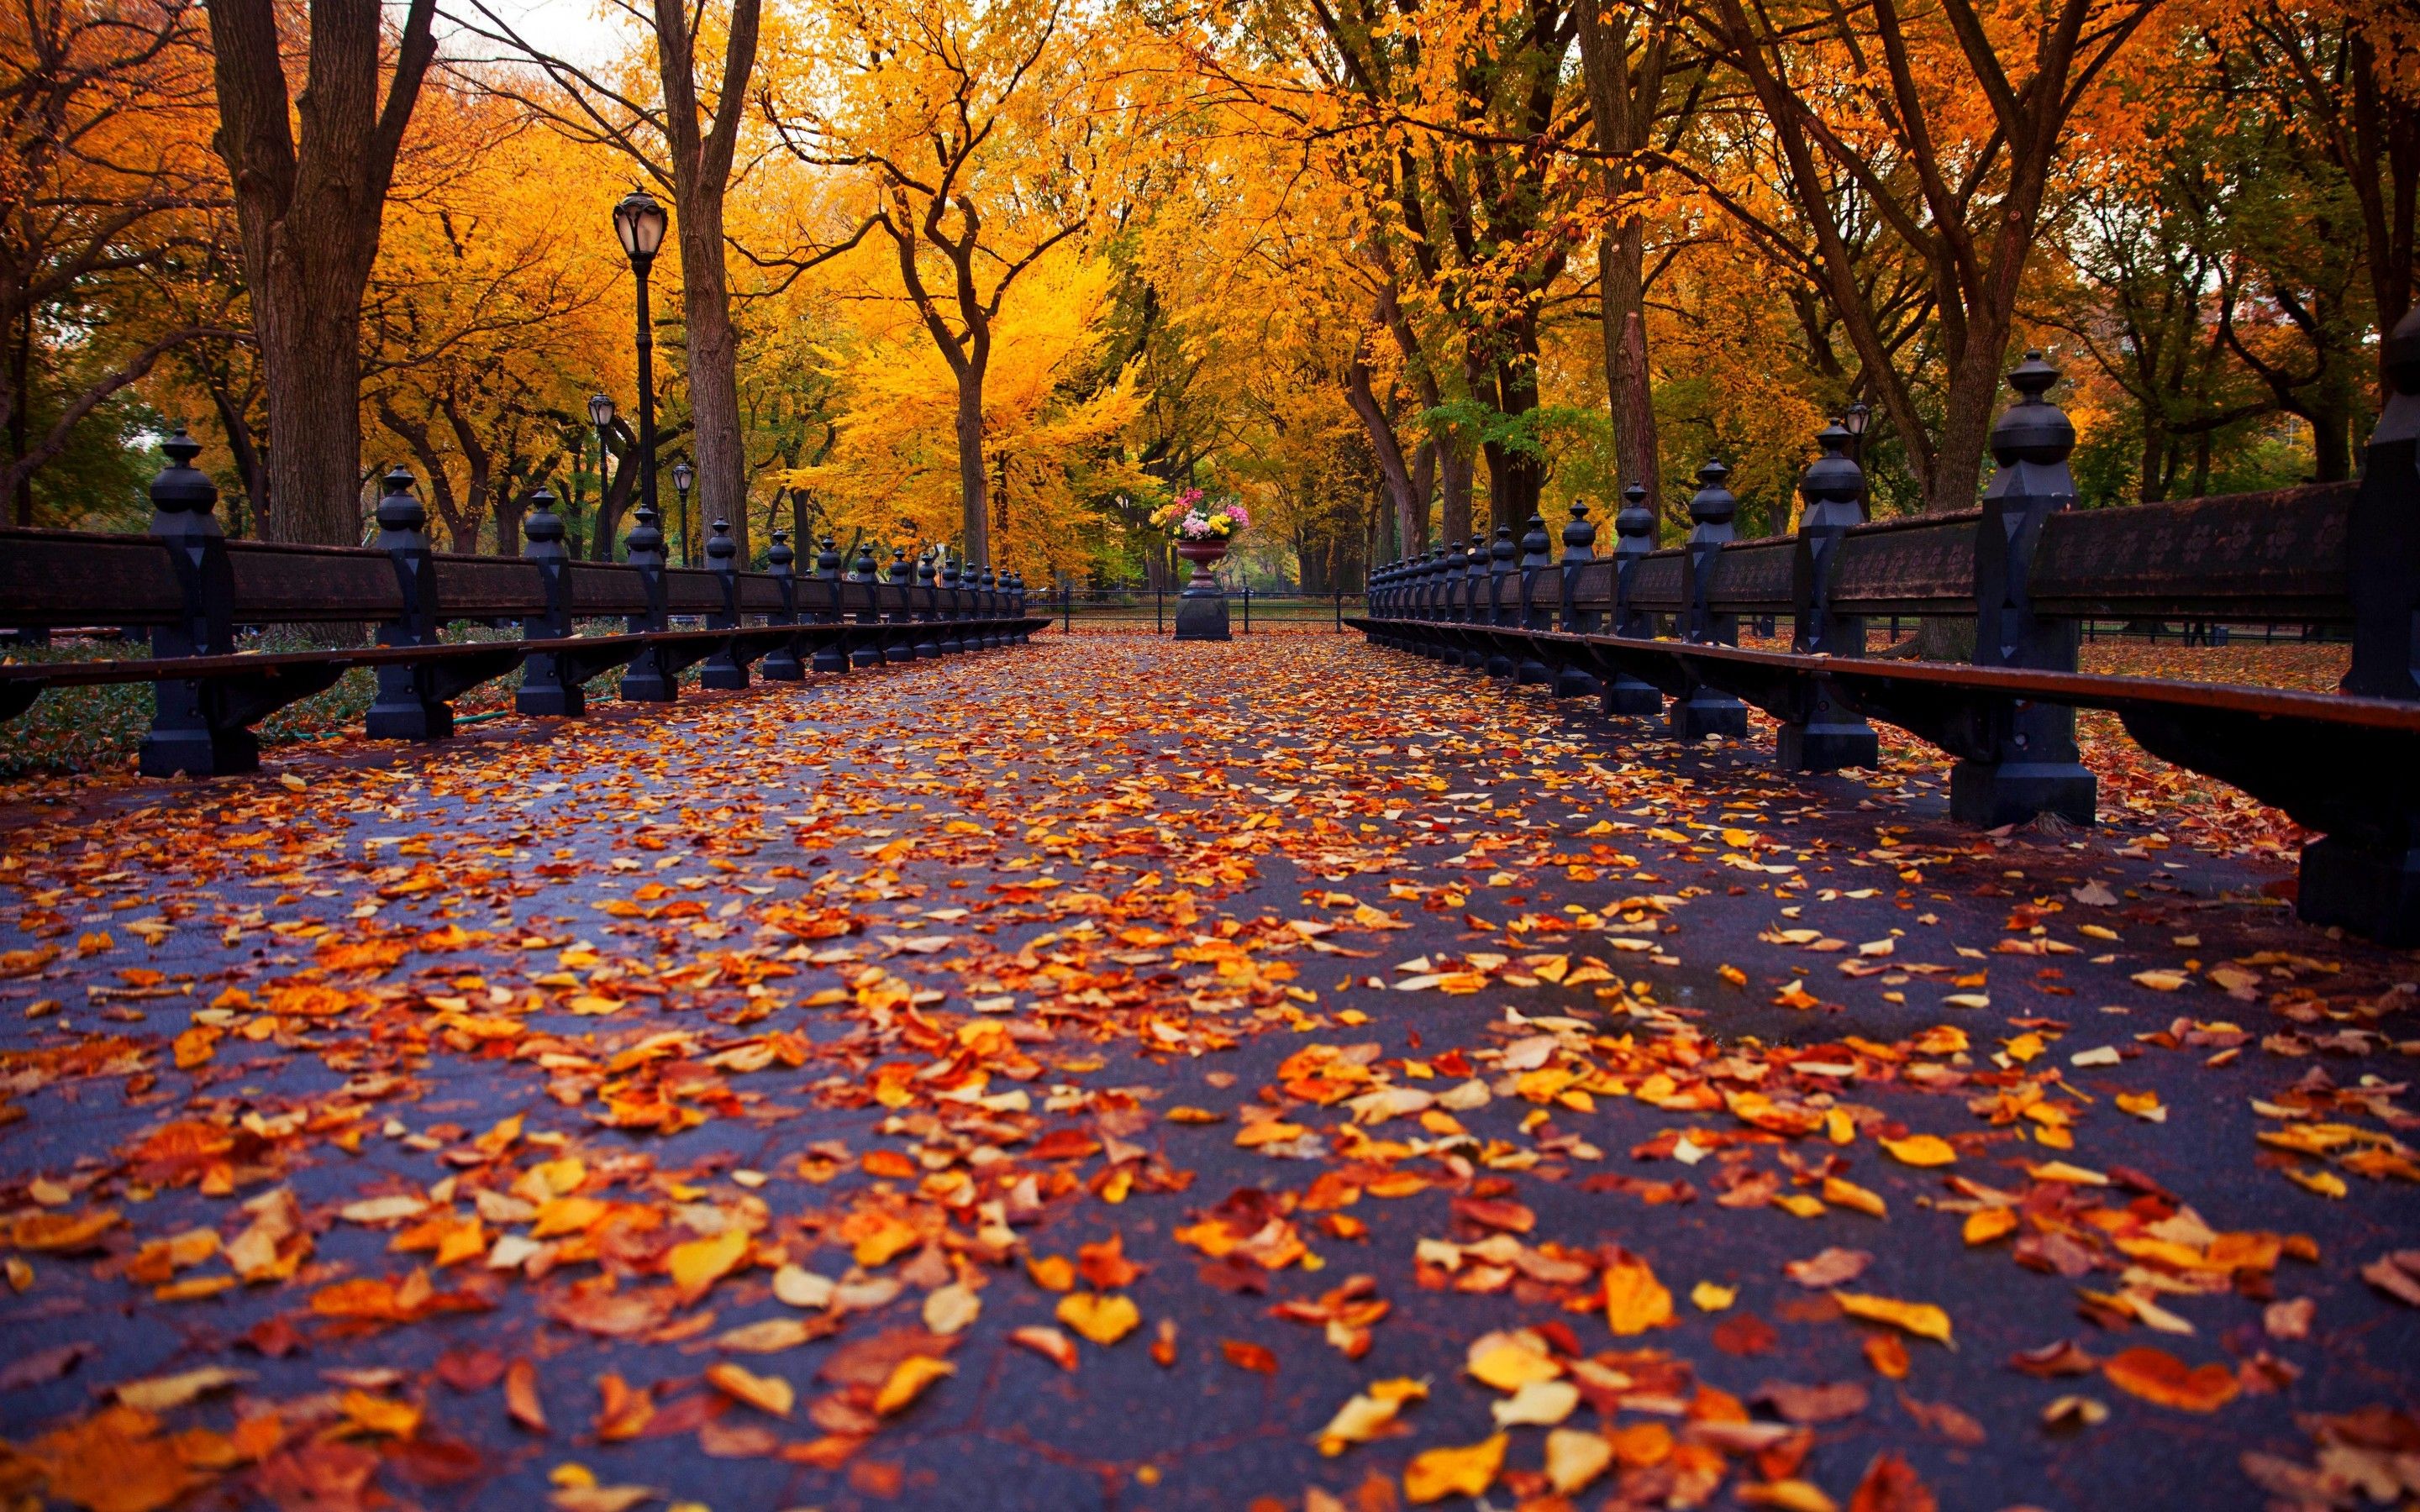 Autumn nature park bench trees leaves avenue New York wallpaperx1800. Paisajes, Garden wallpaper, Parques